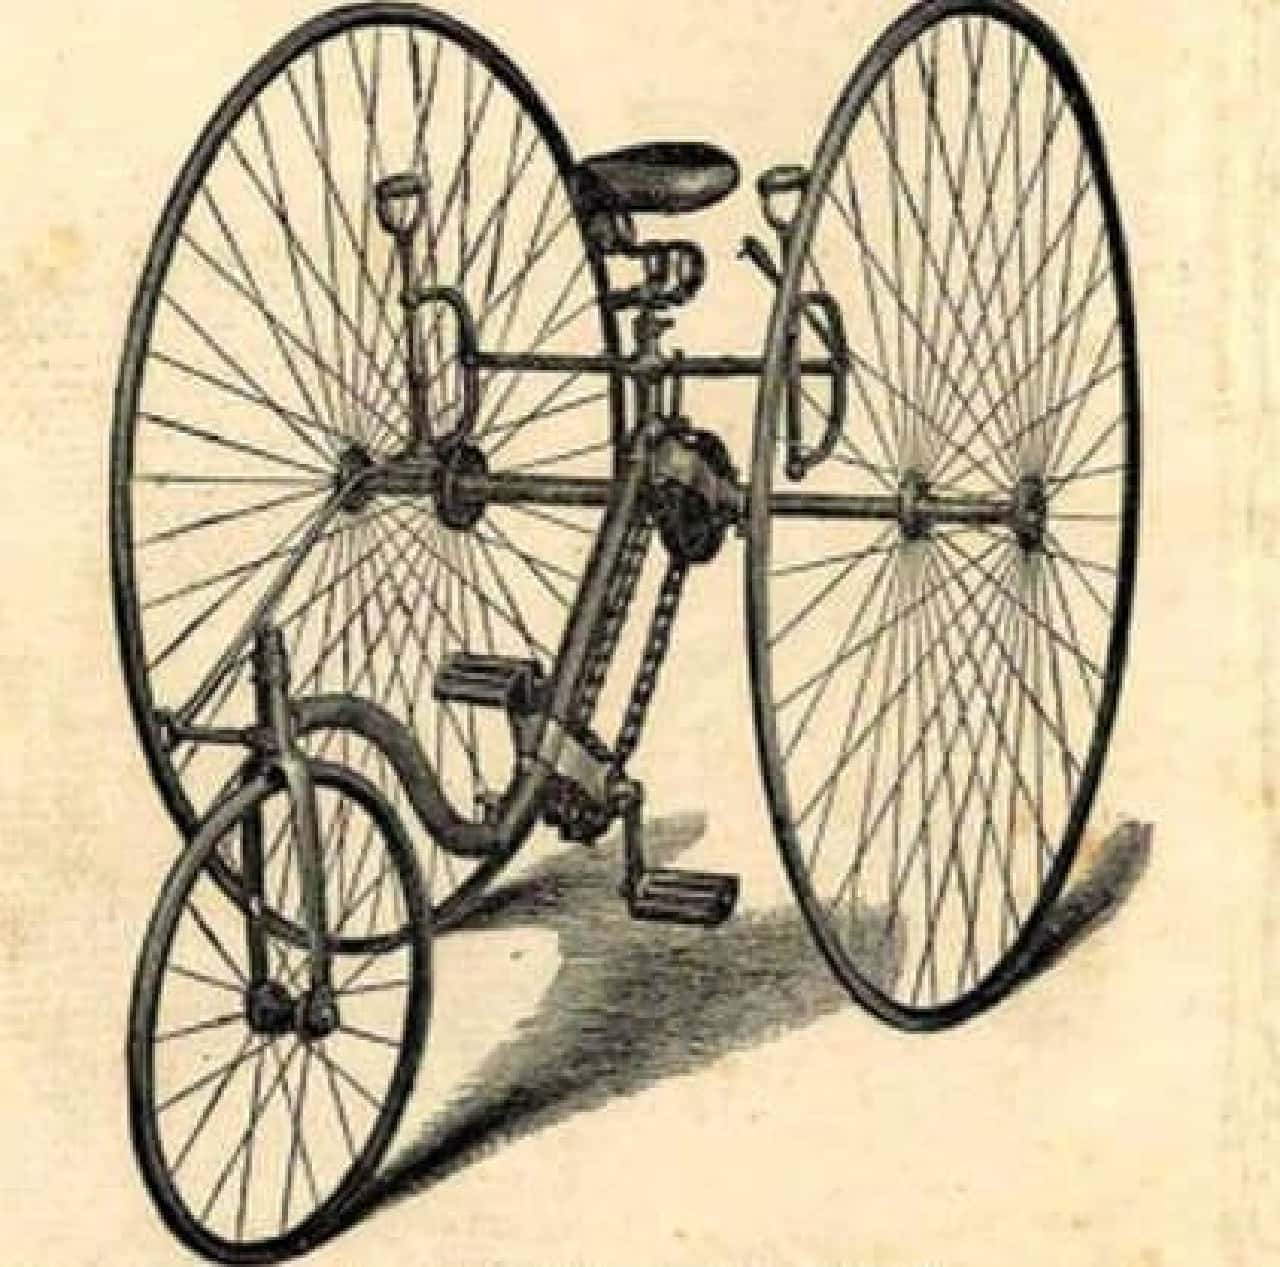 1884年の自転車PLECTOCYCLEを再現した「Pivot Frame Plectocycle」